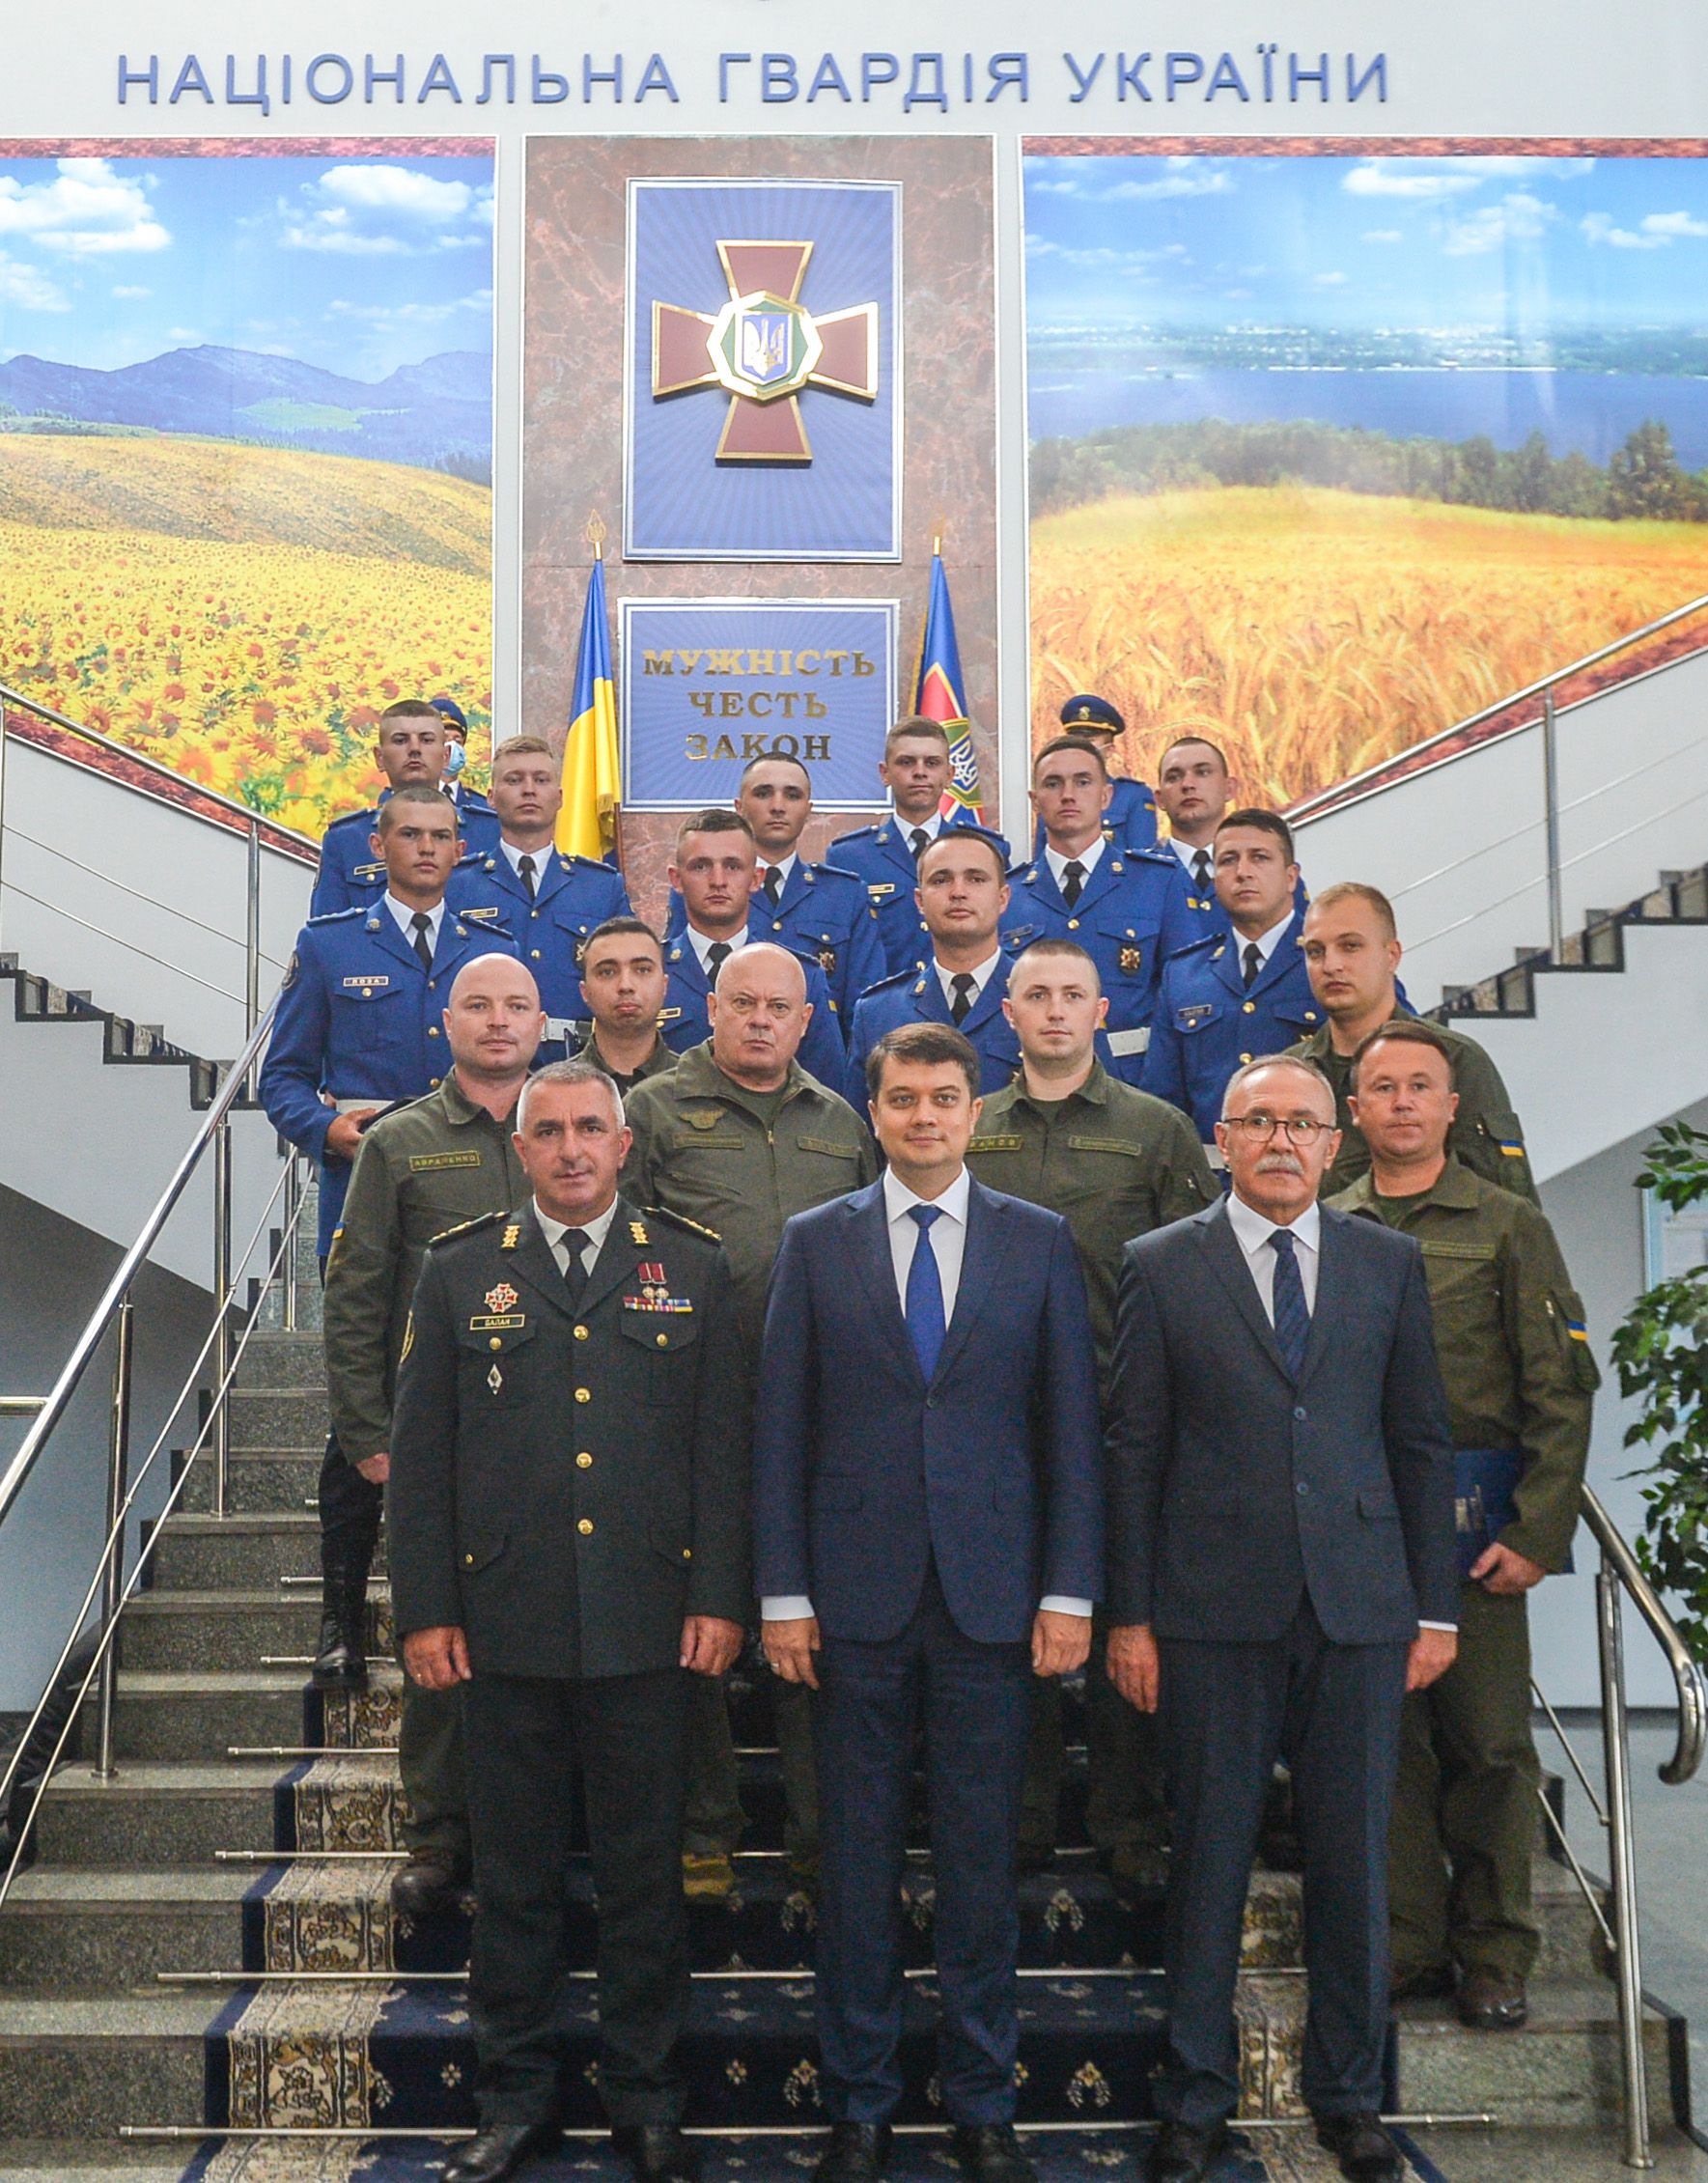 Председатель Верховной Рады ко Дню Конституции наградил военнослужащих Национальной гвардии